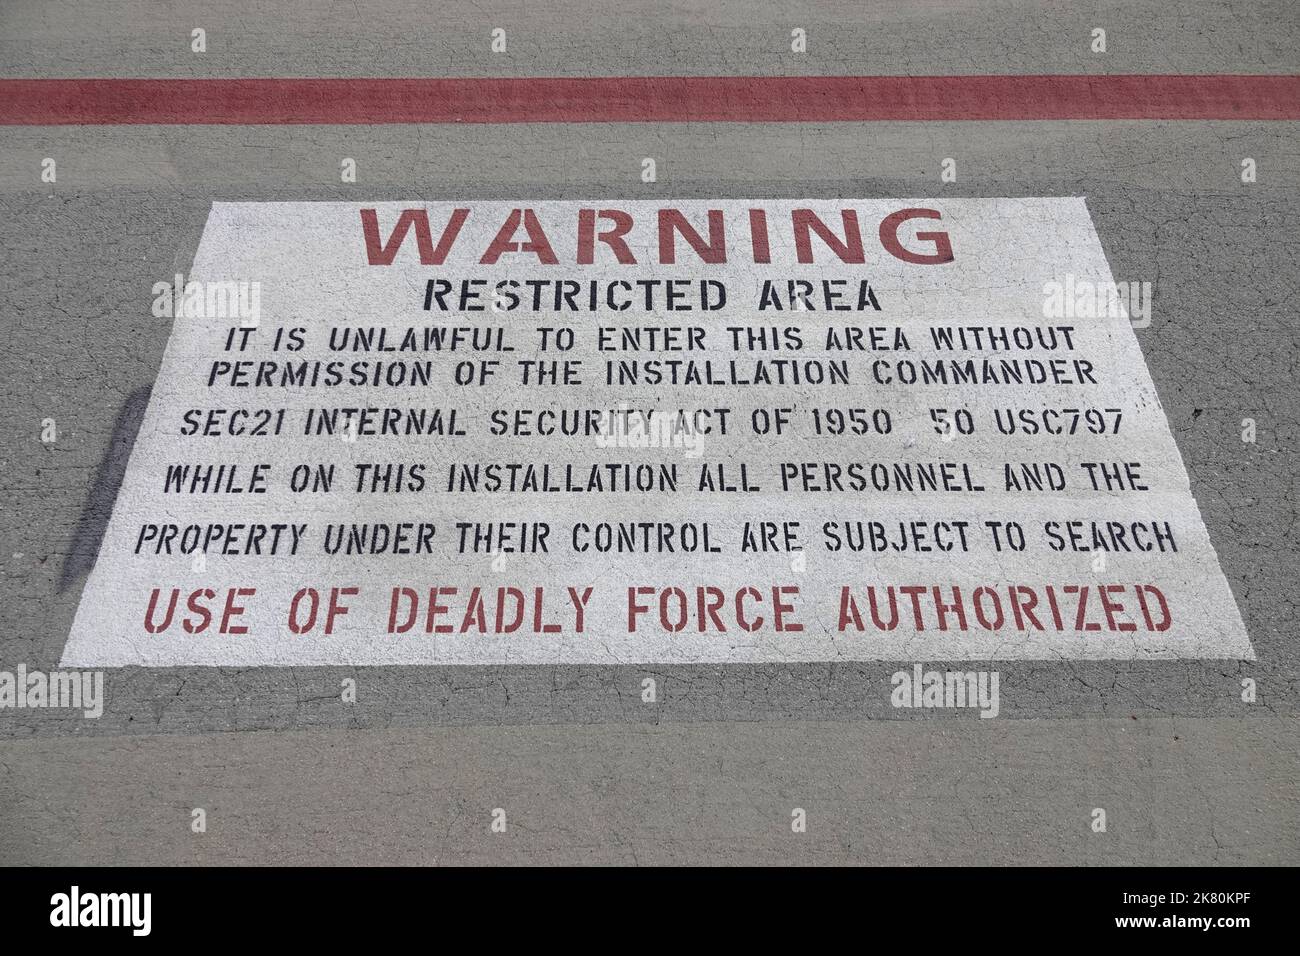 Ein Schild in der Nähe der Fluglinie und der Start- und Landebahn eines militärischen Luftwaffenstützpunktes in den USA betont: WARNHINWEIS EINSATZ TÖDLICHER GEWALT GENEHMIGT Stockfoto